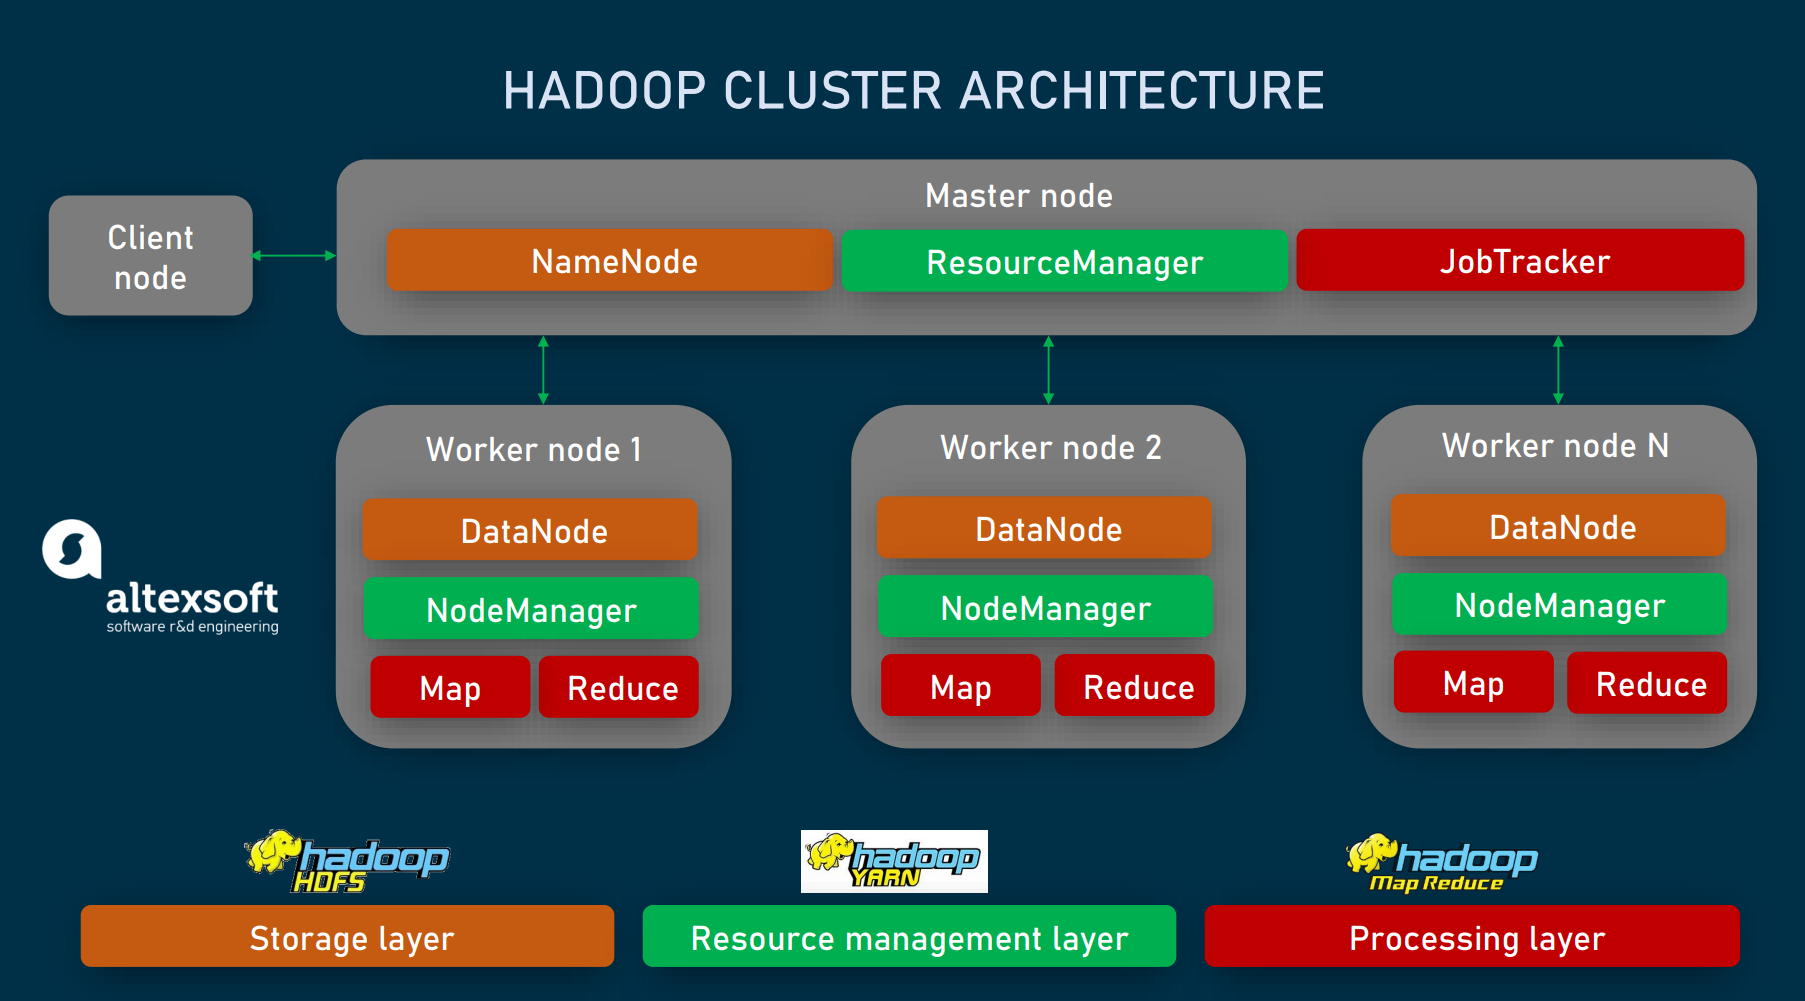 big data hadoop presentation